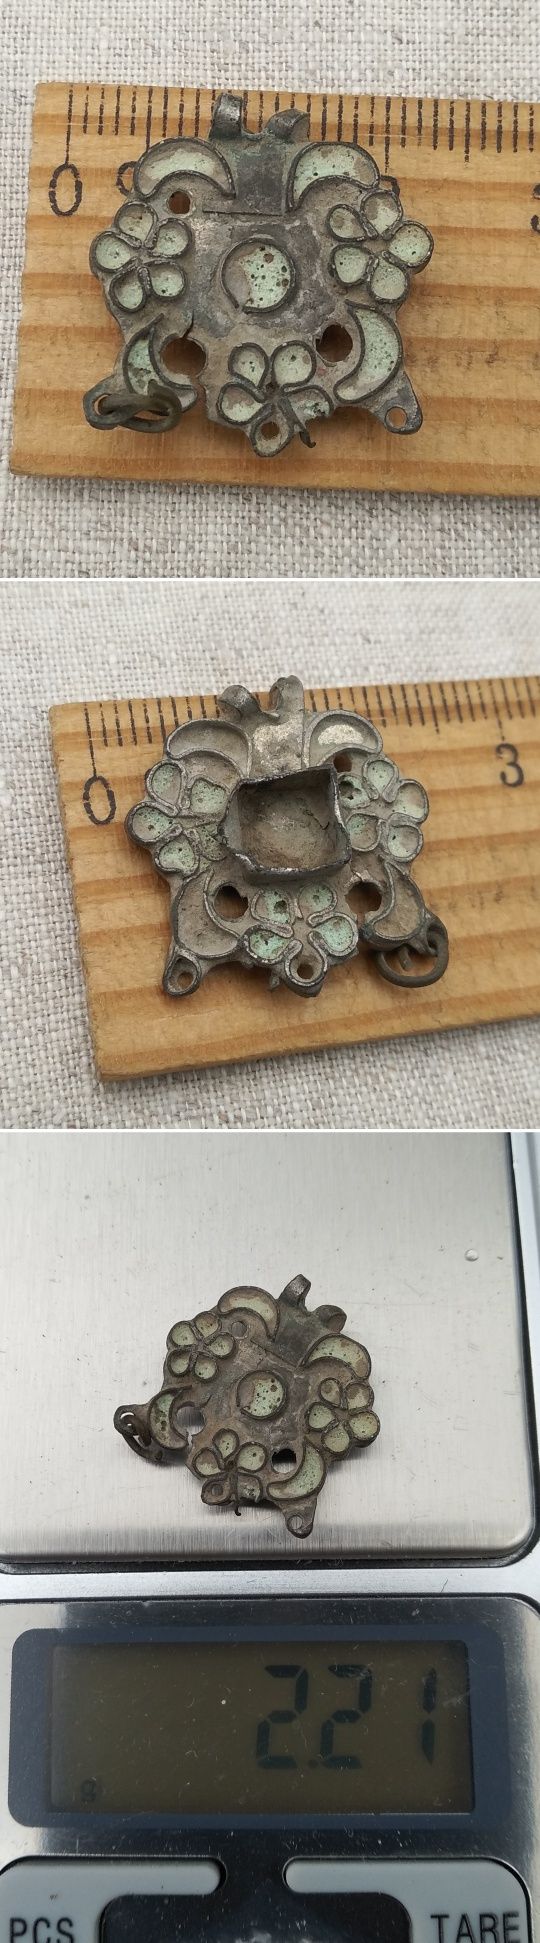 Серебряная монета Данг Золотой Орды и колчанные бляшки 13-14 век.